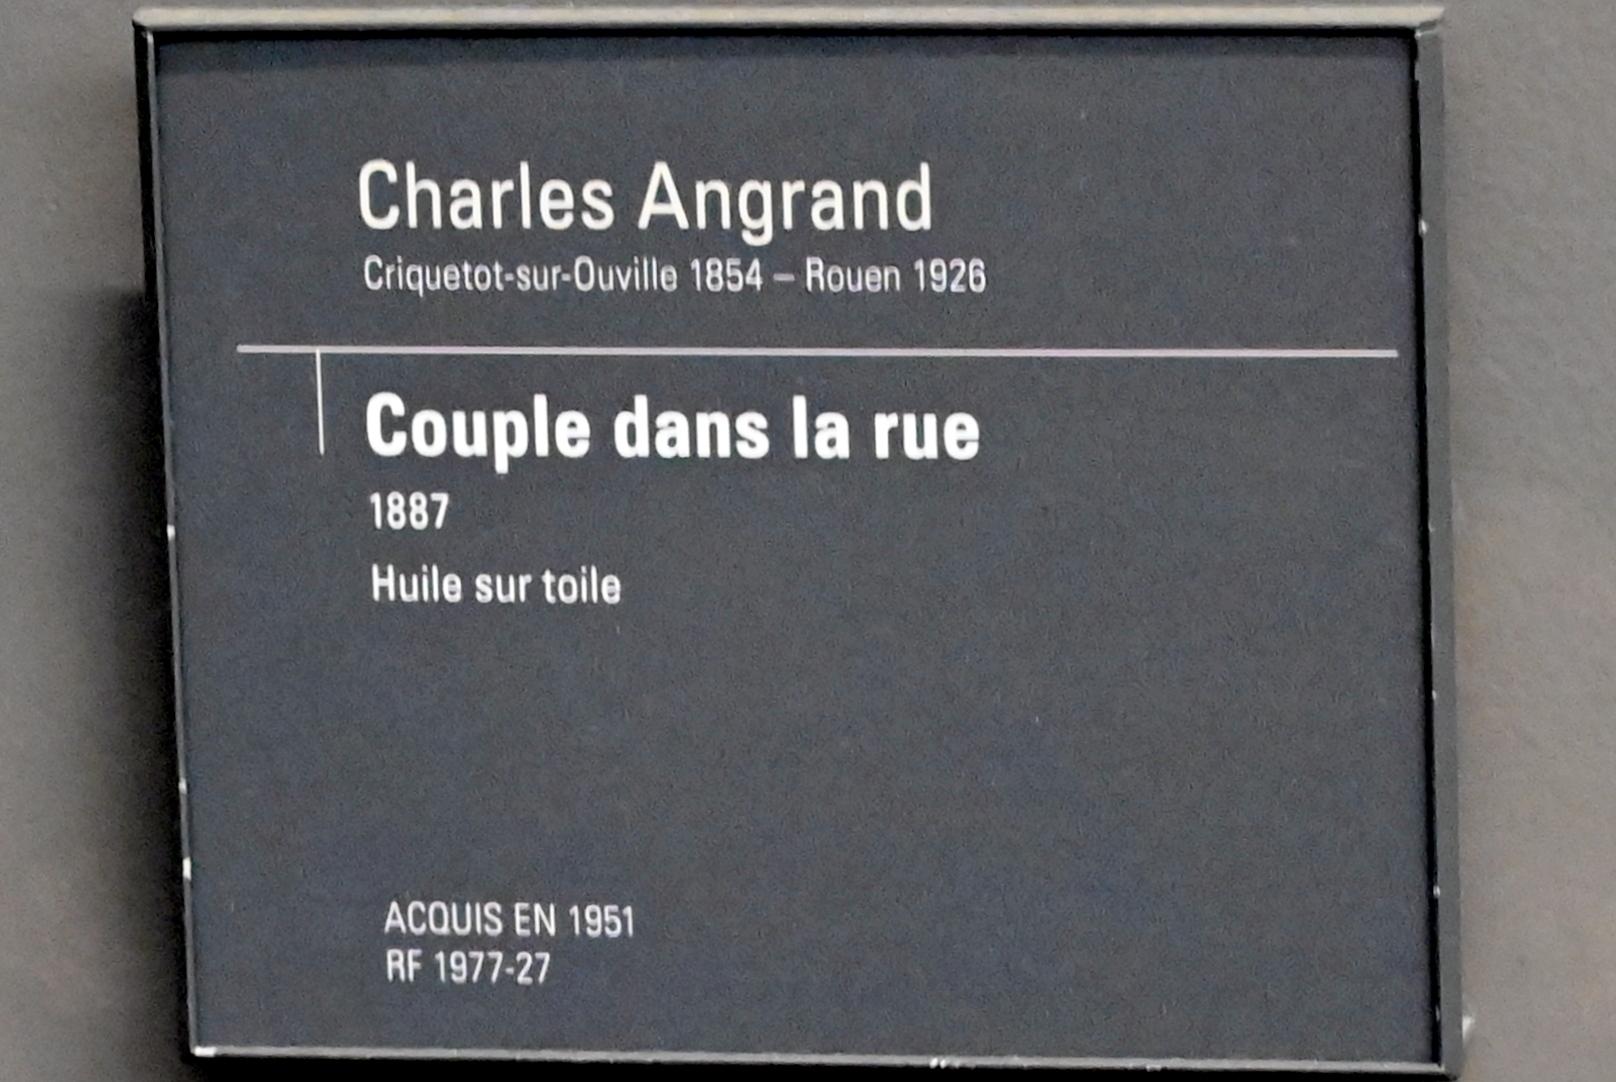 Charles Angrand (1887), Paar auf einer Straße, Paris, Musée d’Orsay, 1887, Bild 2/2